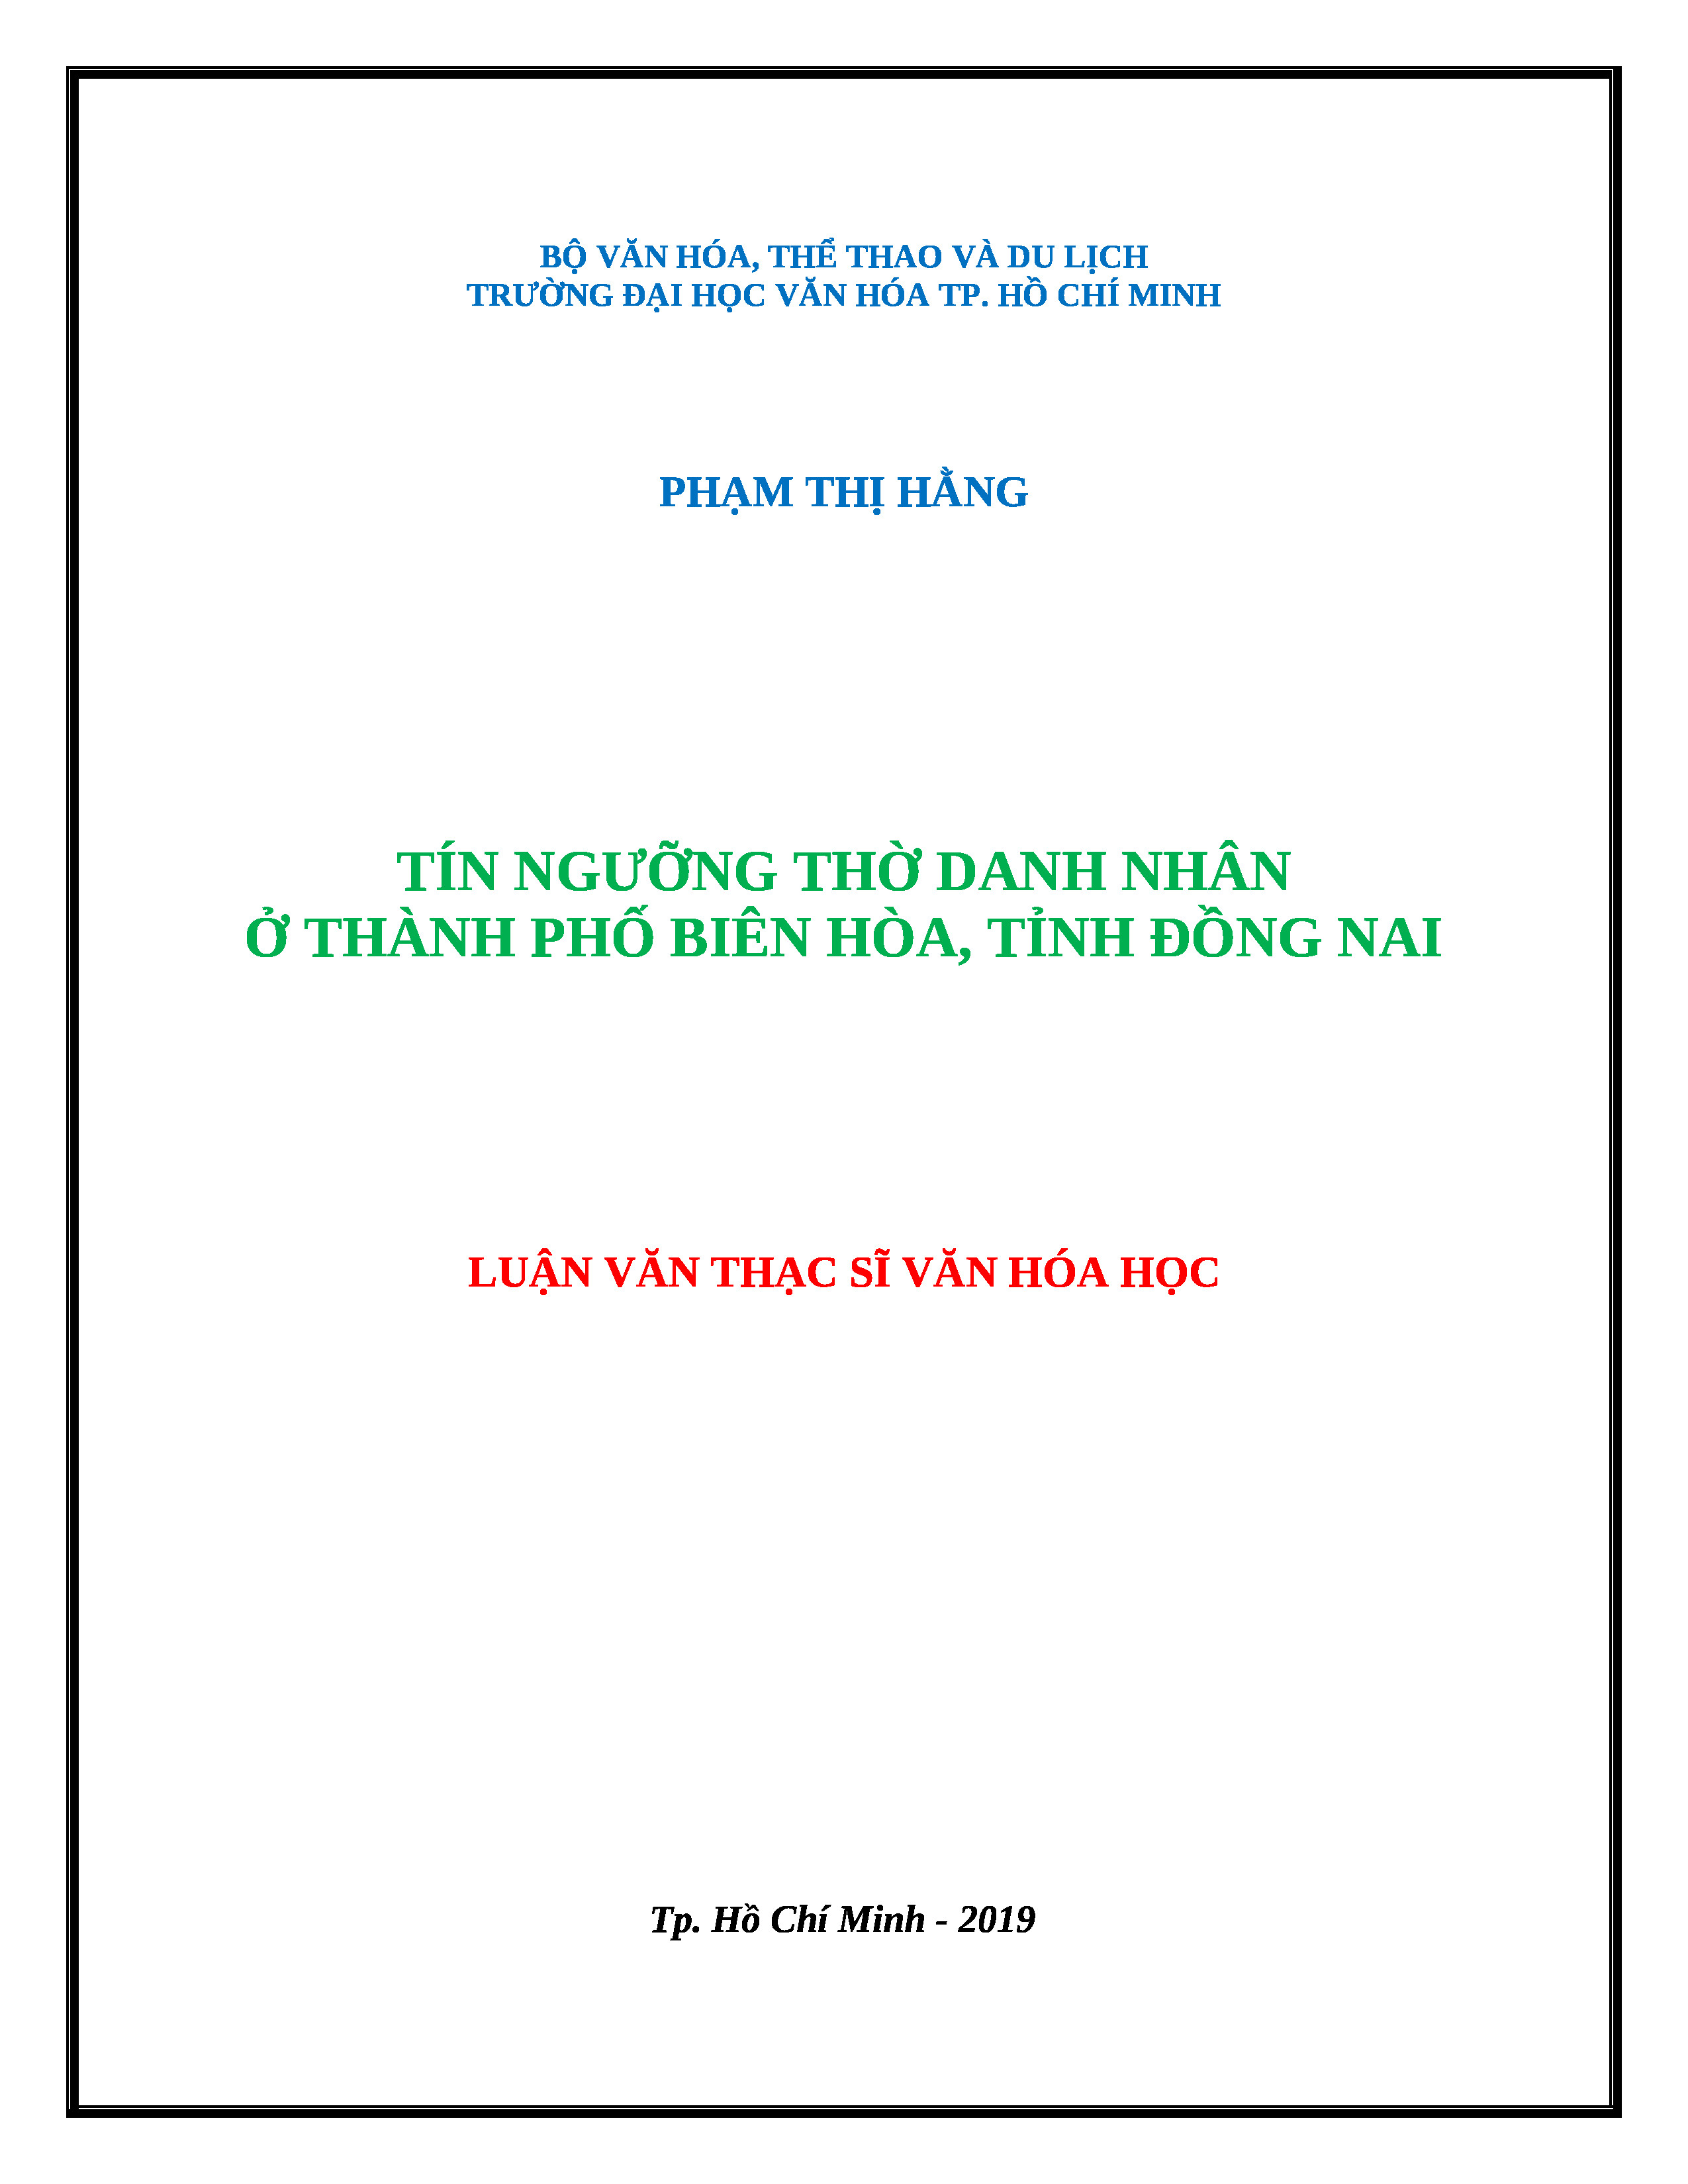 Tín ngưỡng thờ danh nhân ở thành phố Biên Hòa tỉnh Đồng Nai